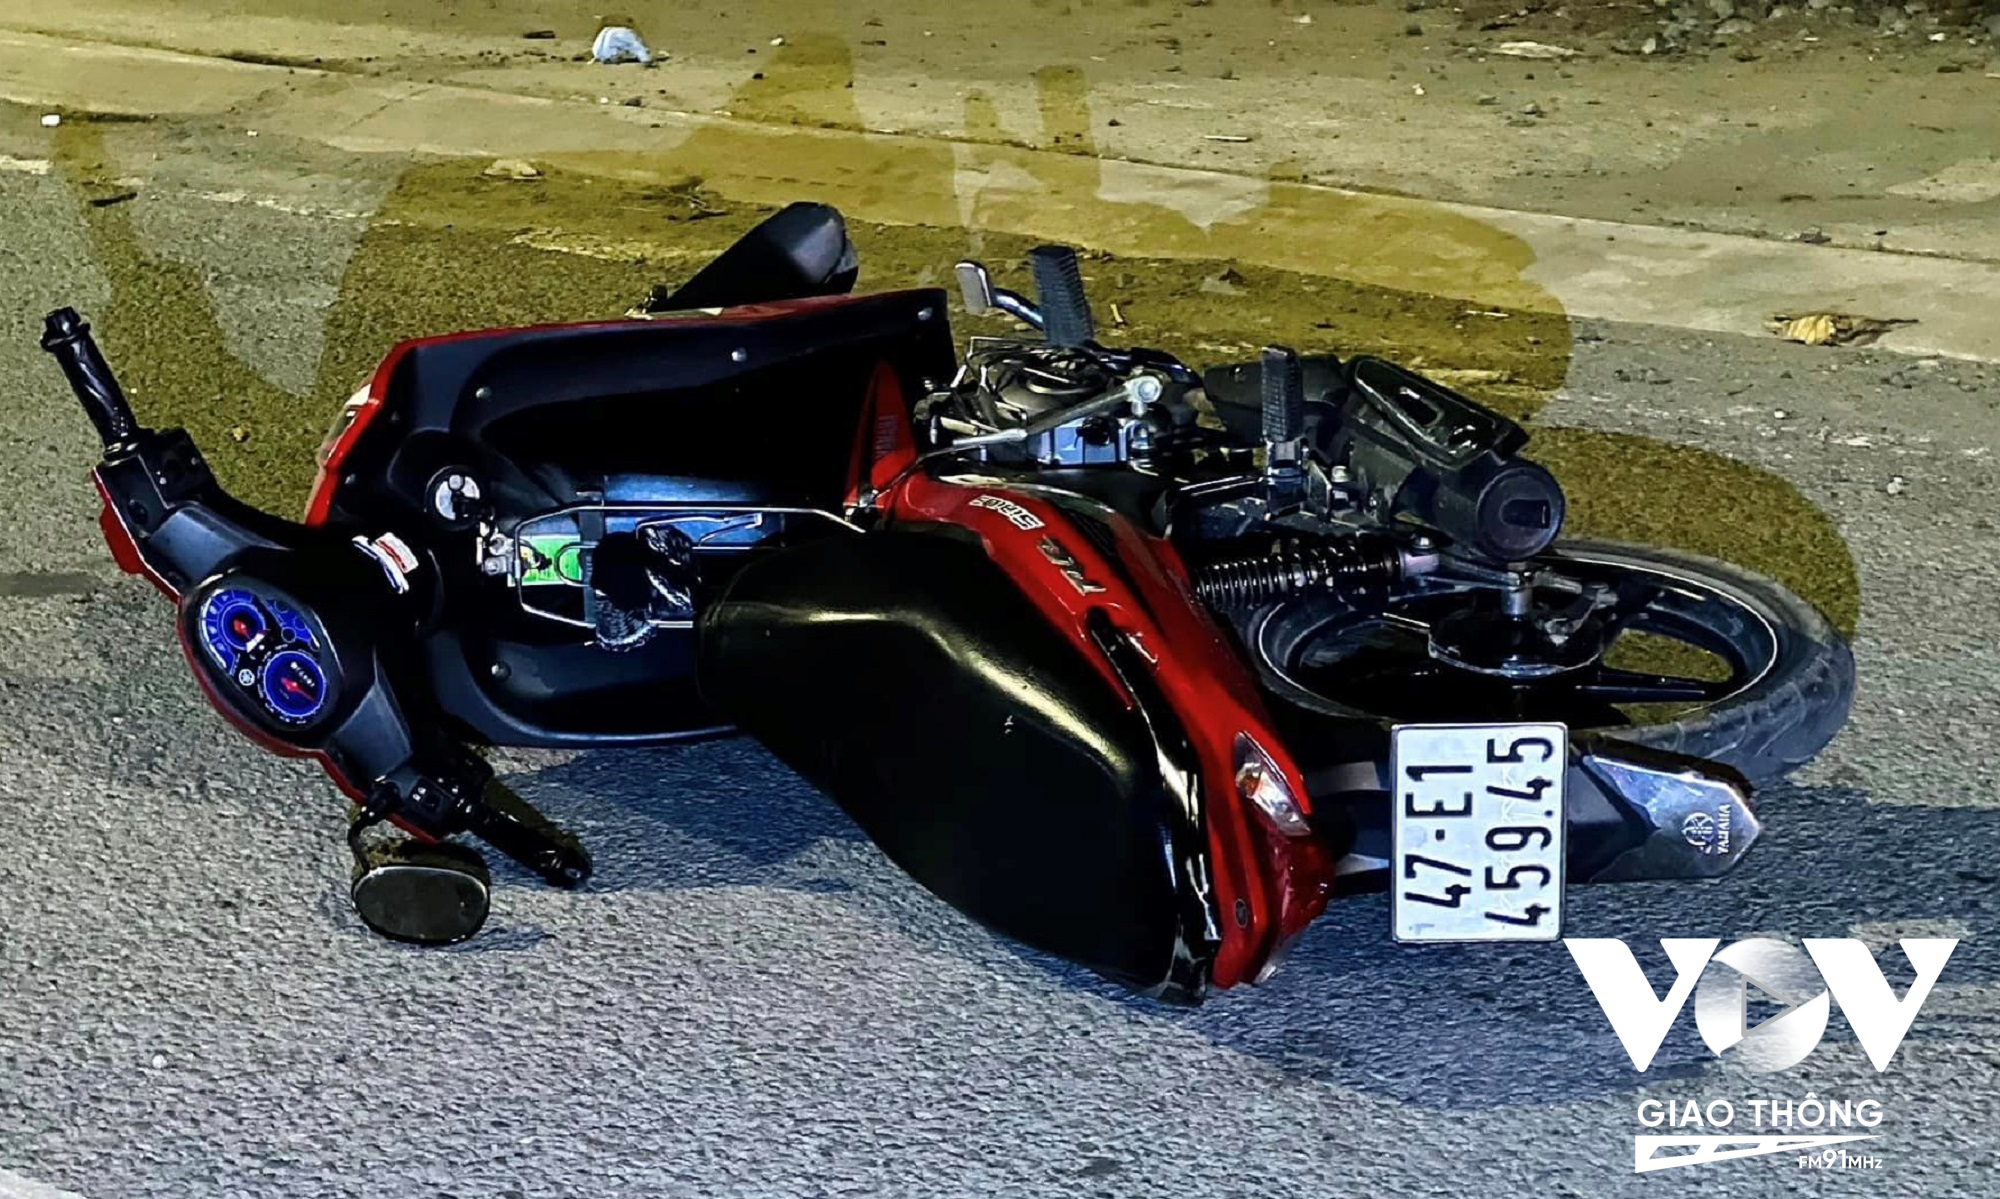 Chiếc xe máy của nạn nhân trong vụ tai nạn